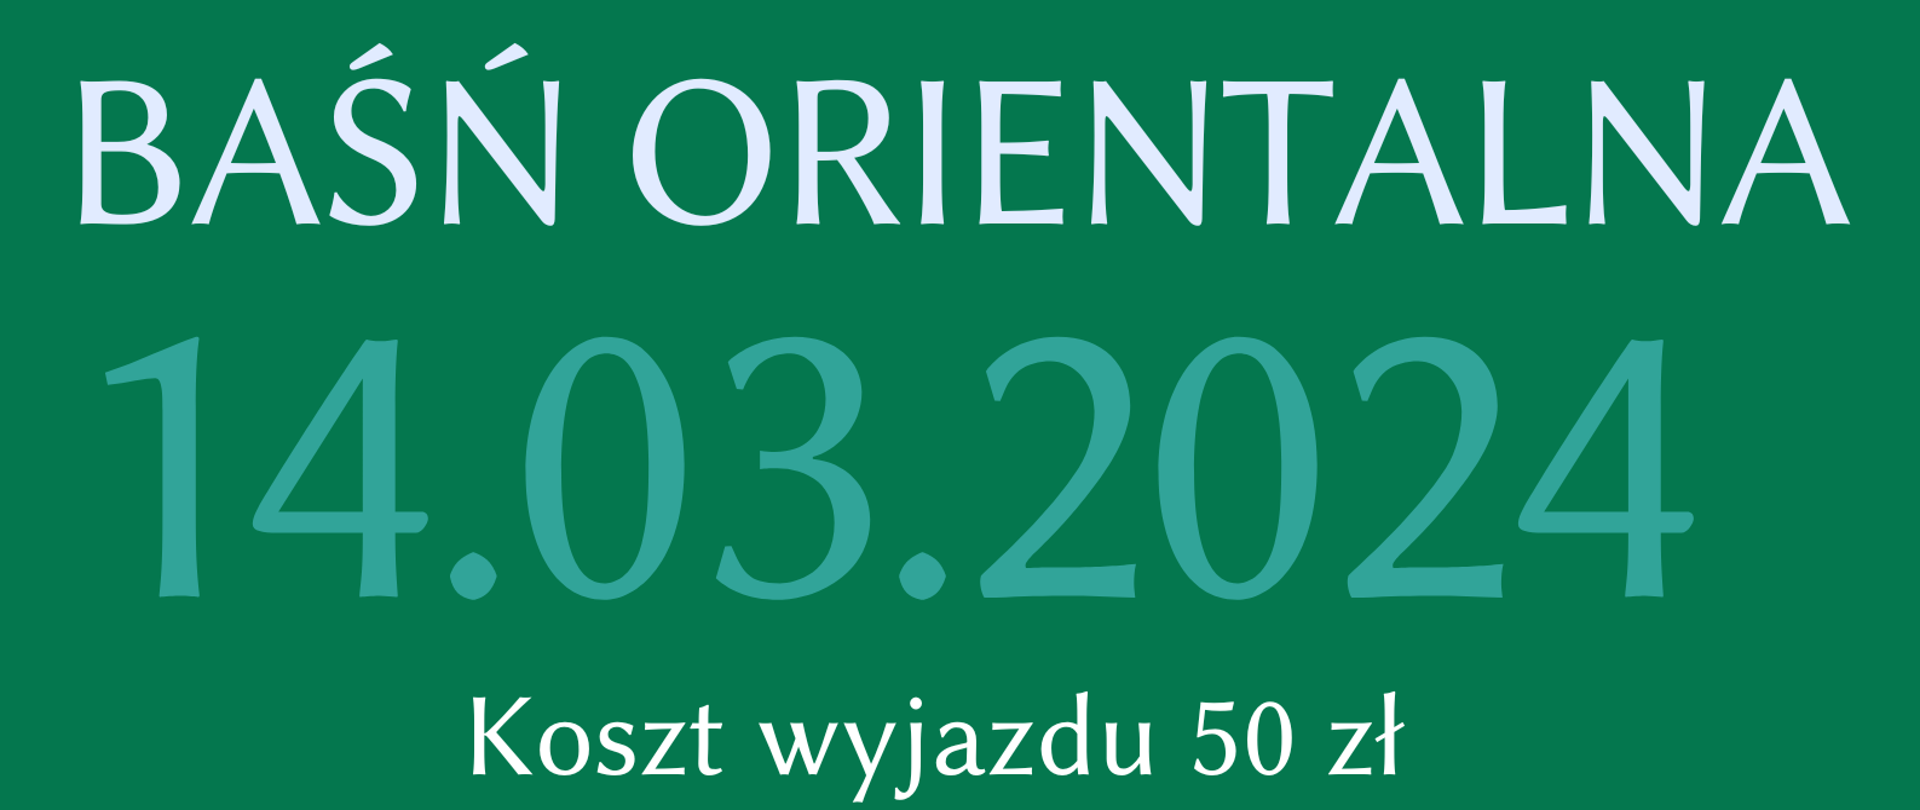 Plakat na zielonym tle ze szczegółową informacją tekstową dotyczącą wyjazdu do NFM we Wrocławiu na koncert "Baśń orientalna " - 14.03.2023